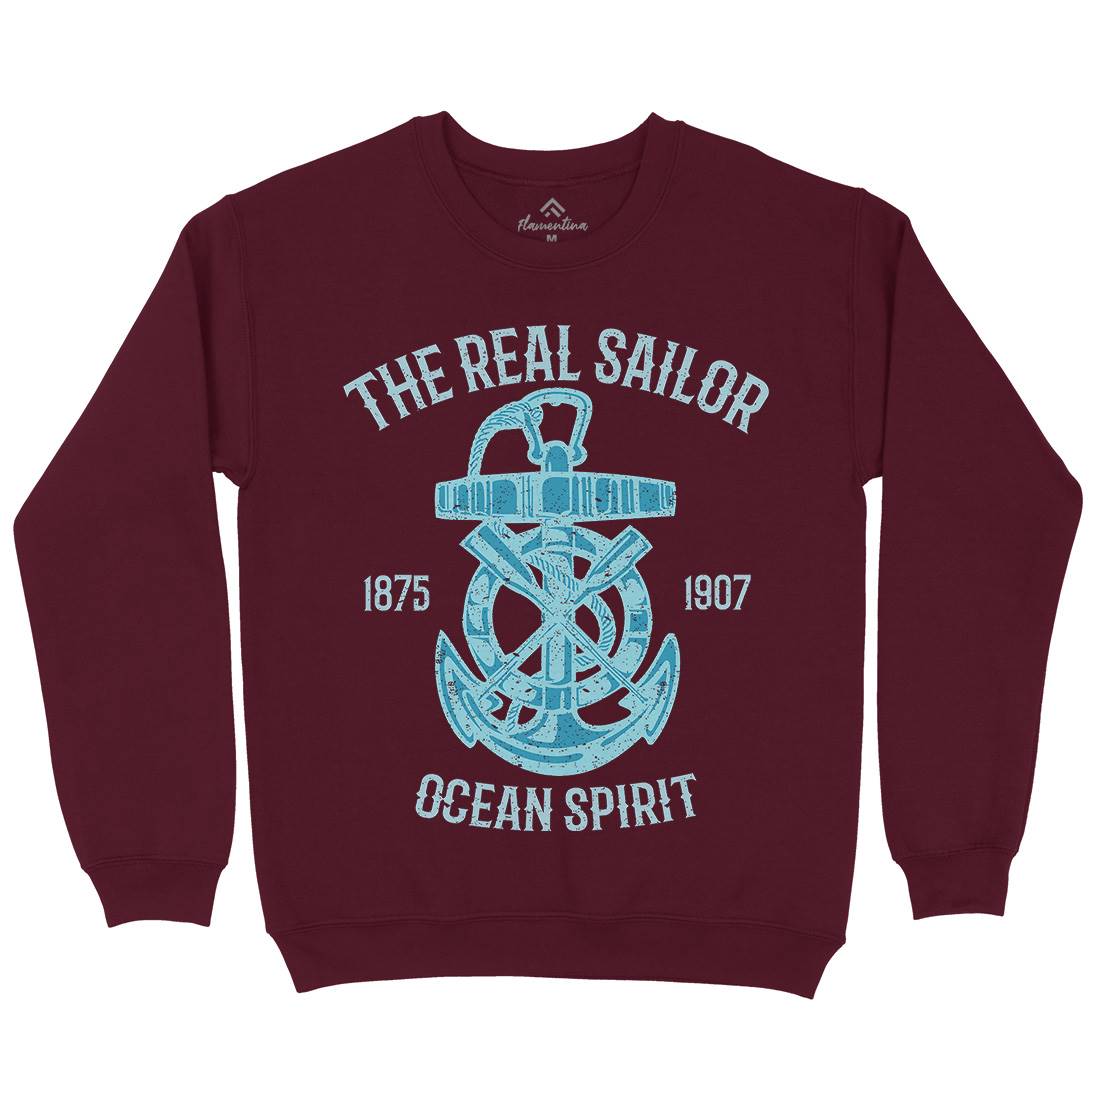 Ocean Spirit Kids Crew Neck Sweatshirt Navy A097